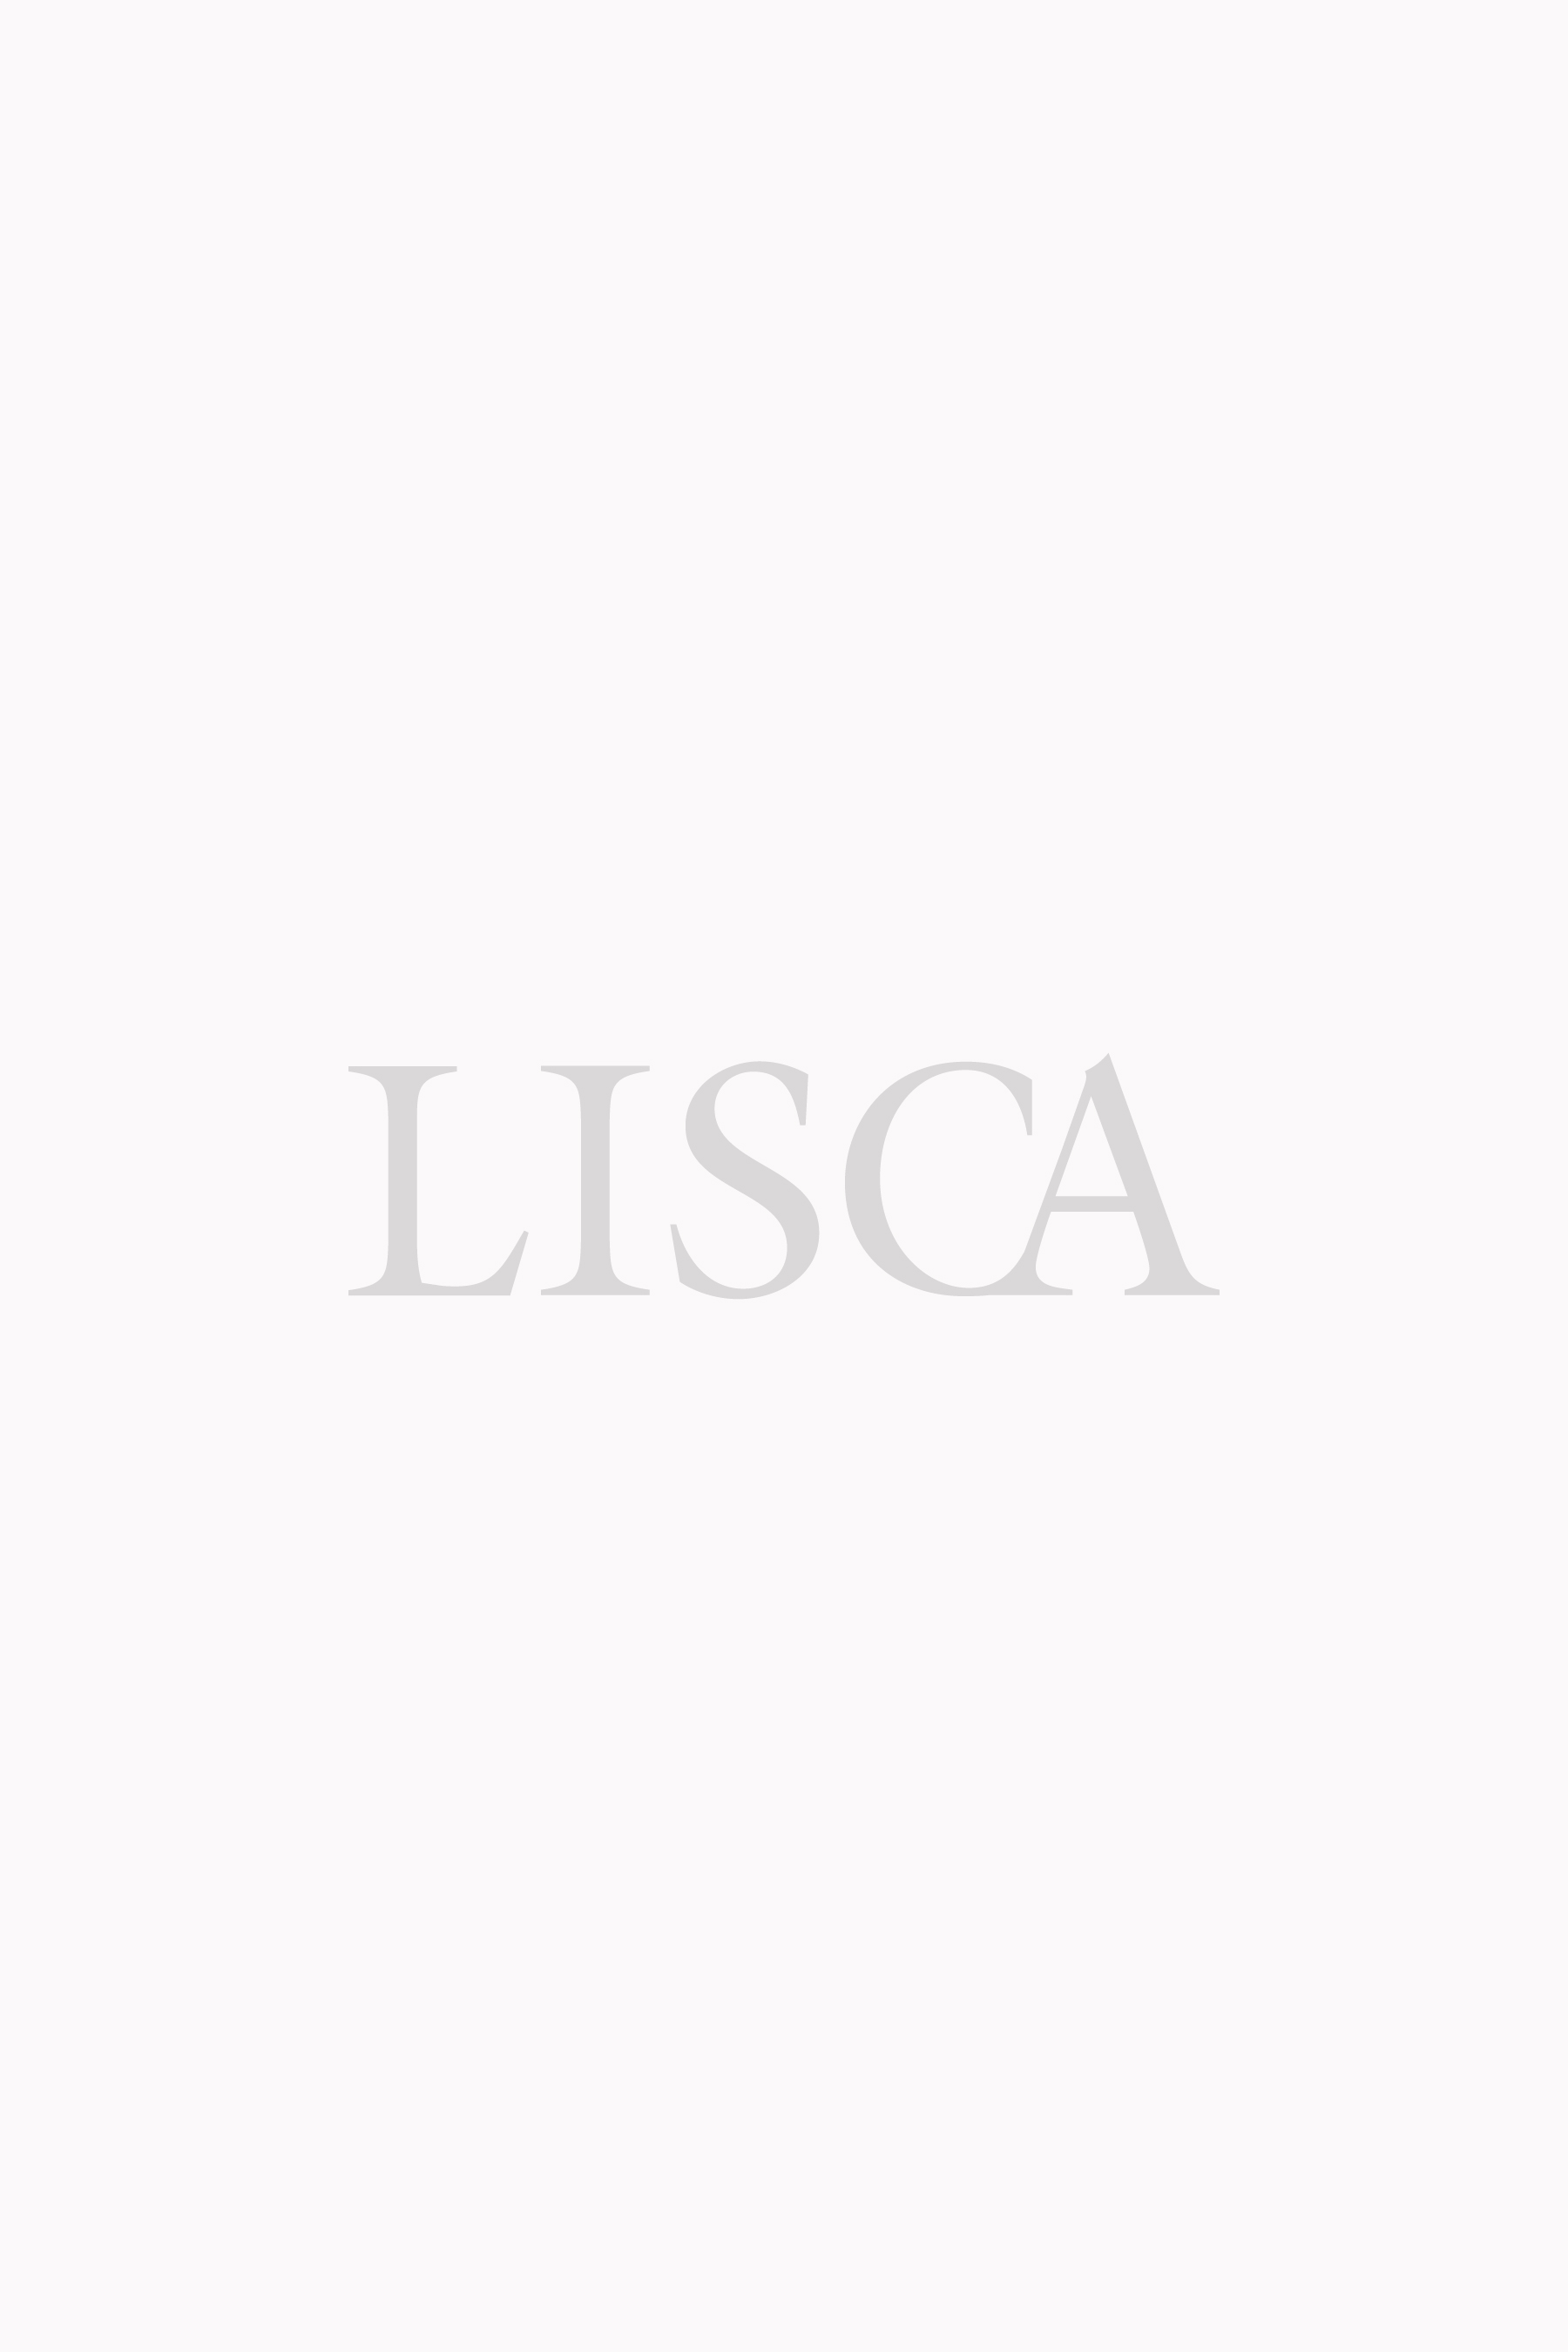 Триаголен градник без жици »Lima« - костим за капење